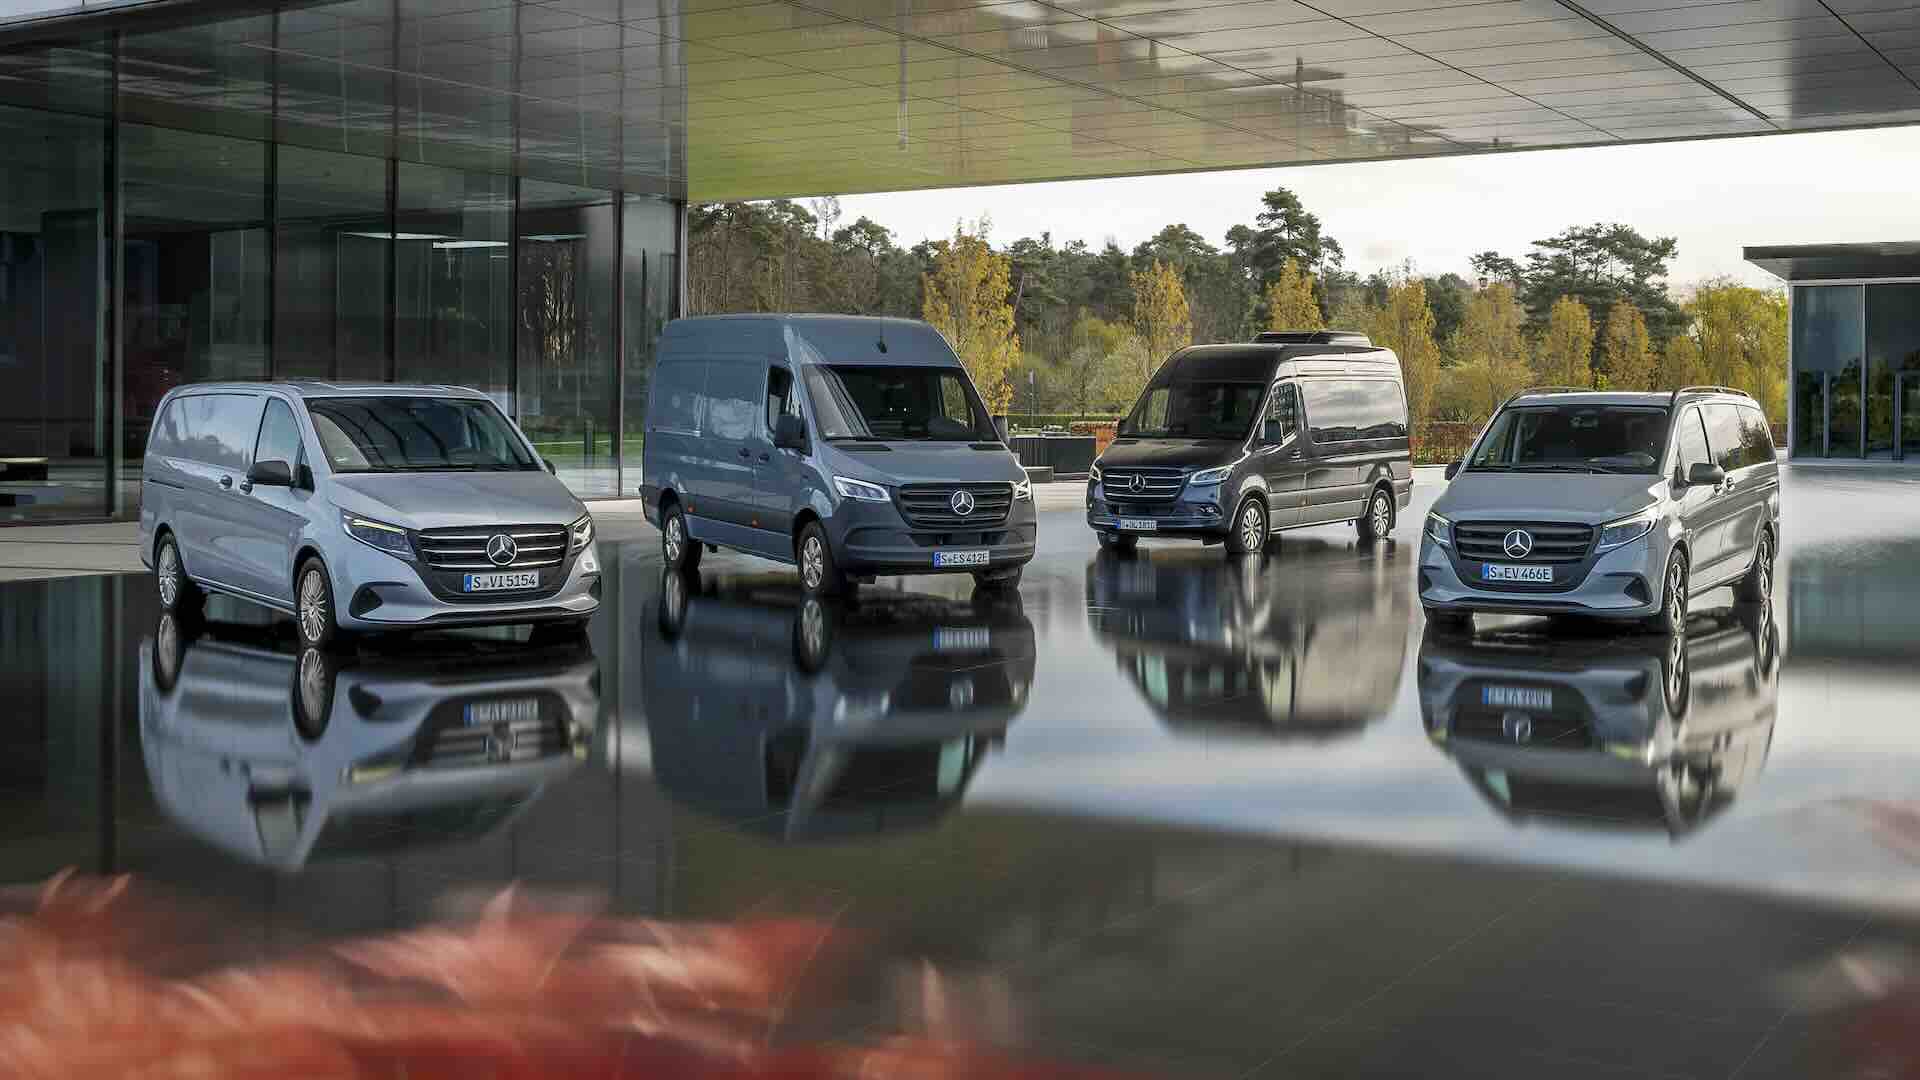 Ecobonus 2024: furgoni, van e veicoli commerciali ammessi Mercedes-Benz Vans